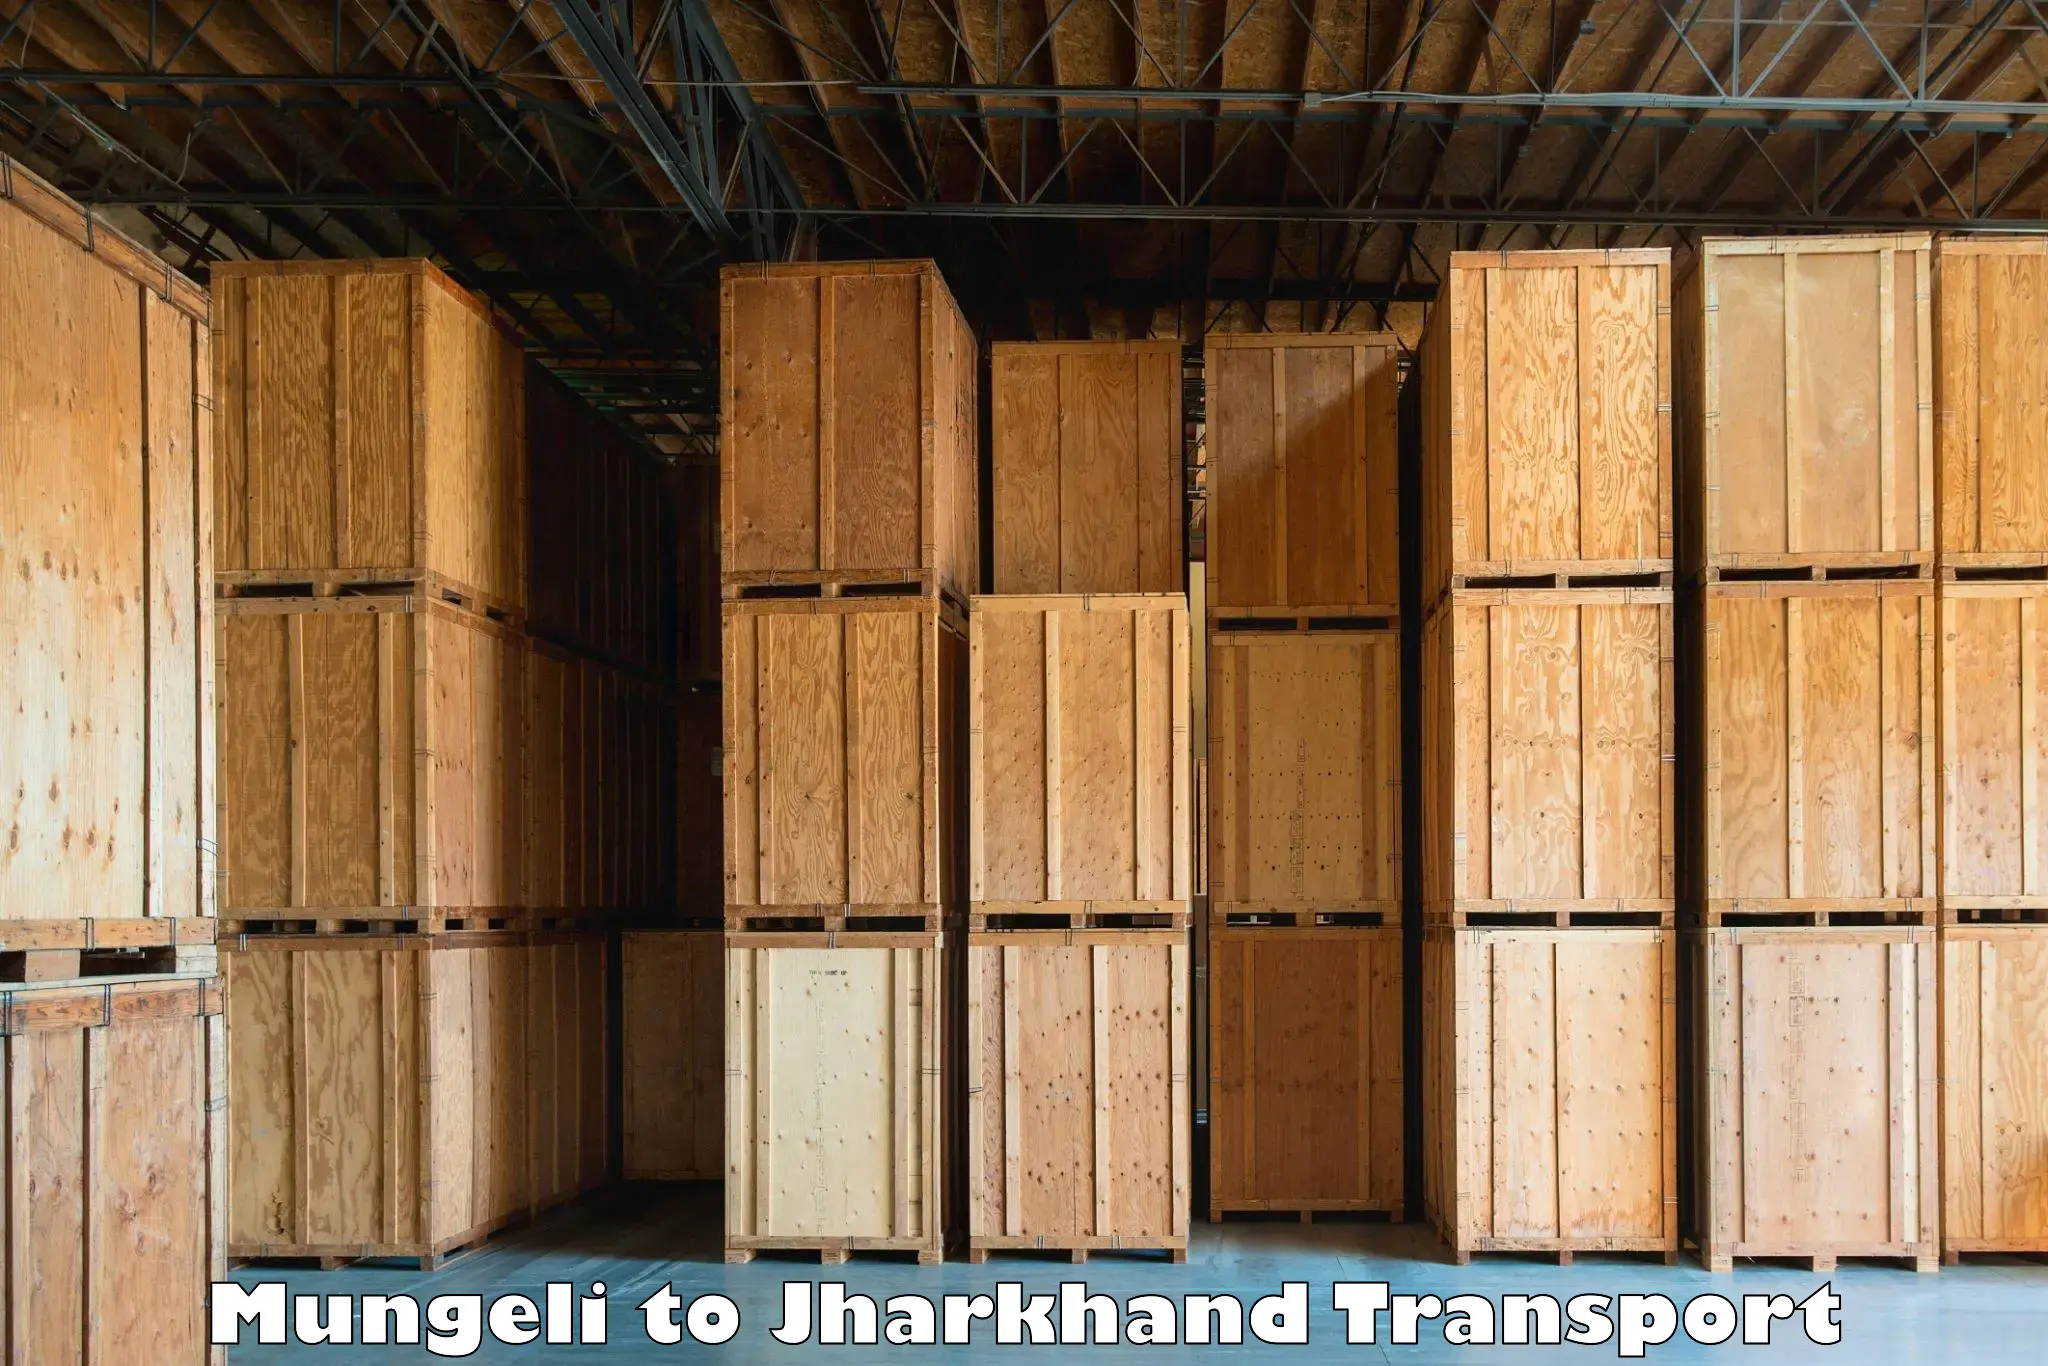 Nearest transport service Mungeli to Patan Palamu